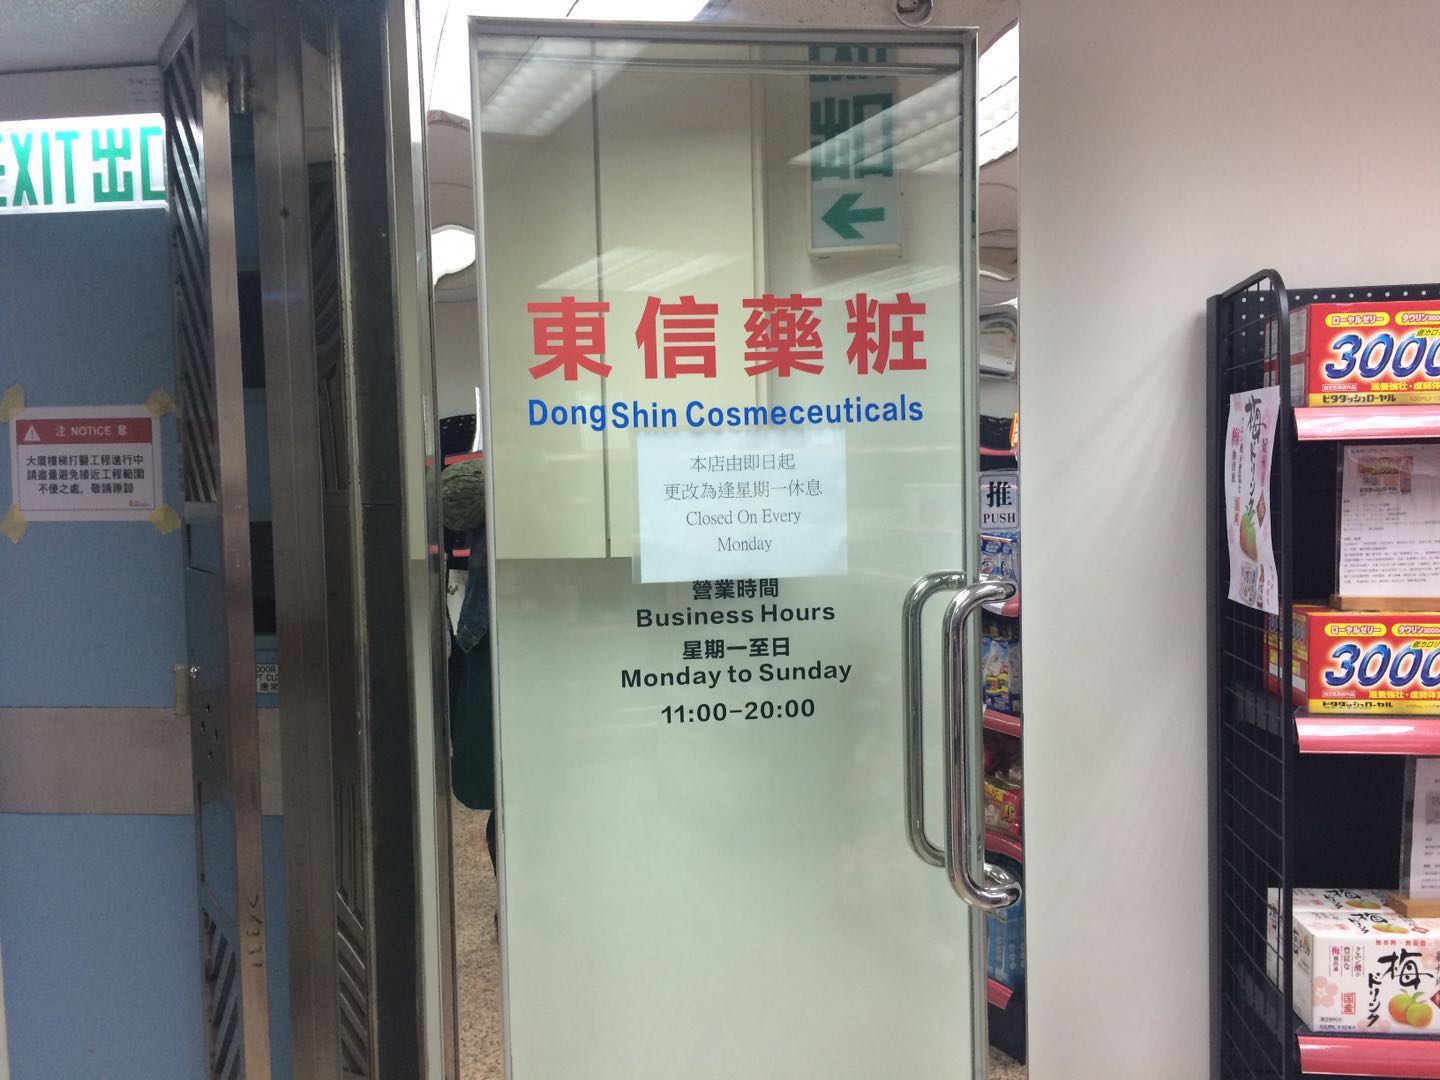 香港旺角自营专卖店「东信药妆」